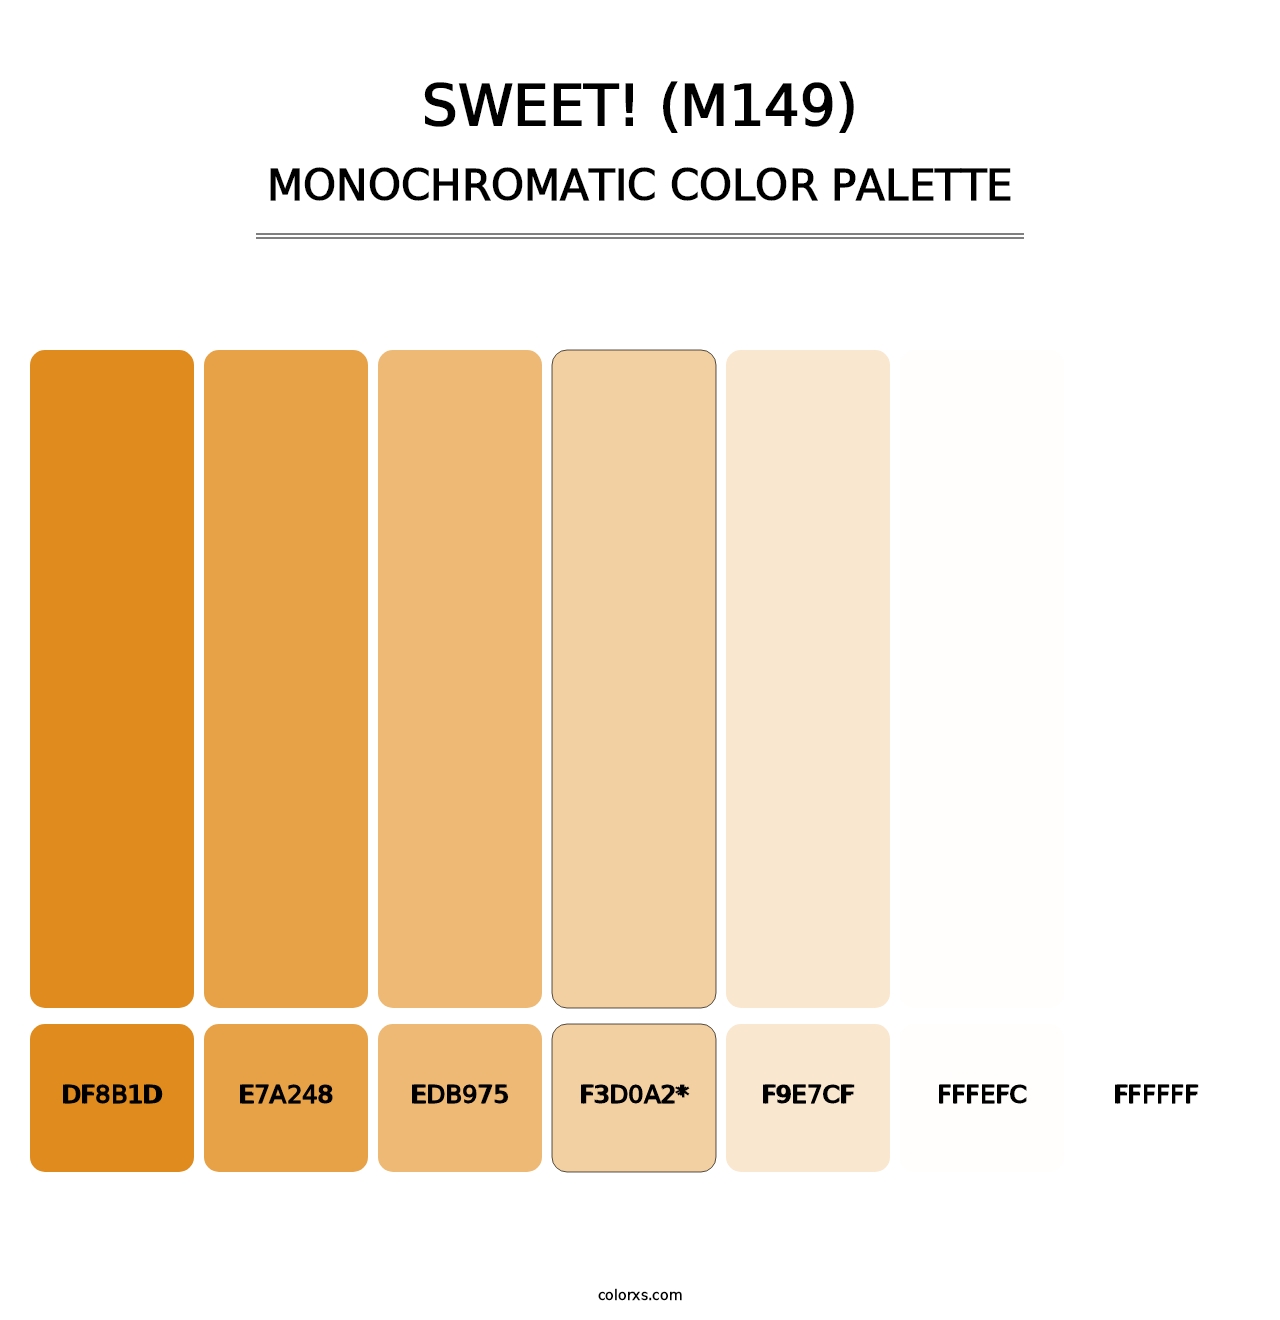 sweet! (M149) - Monochromatic Color Palette